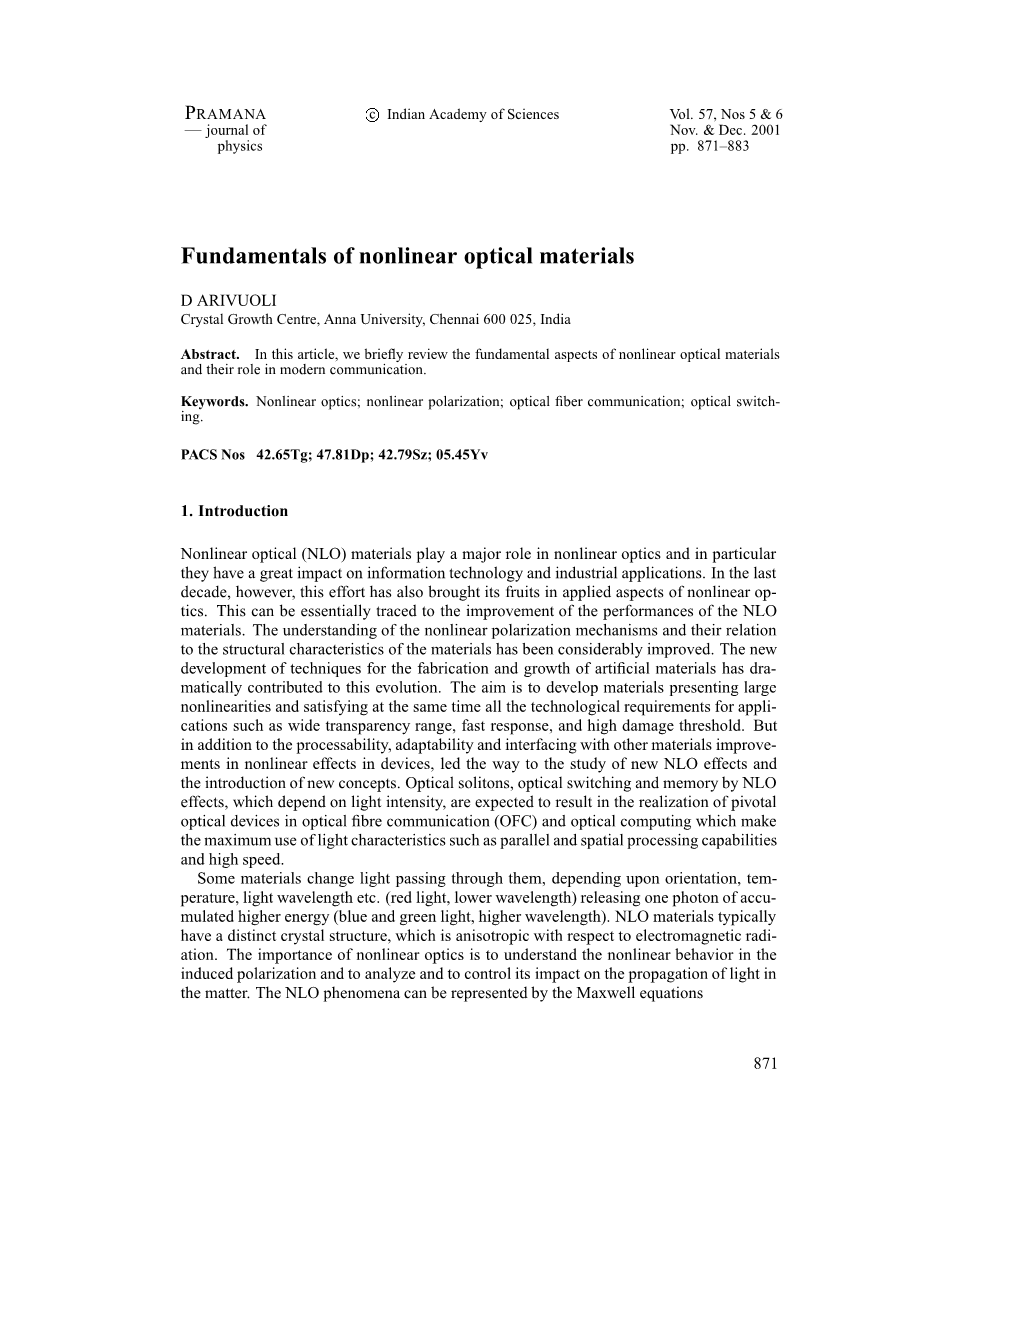 Fundamentals of Nonlinear Optical Materials